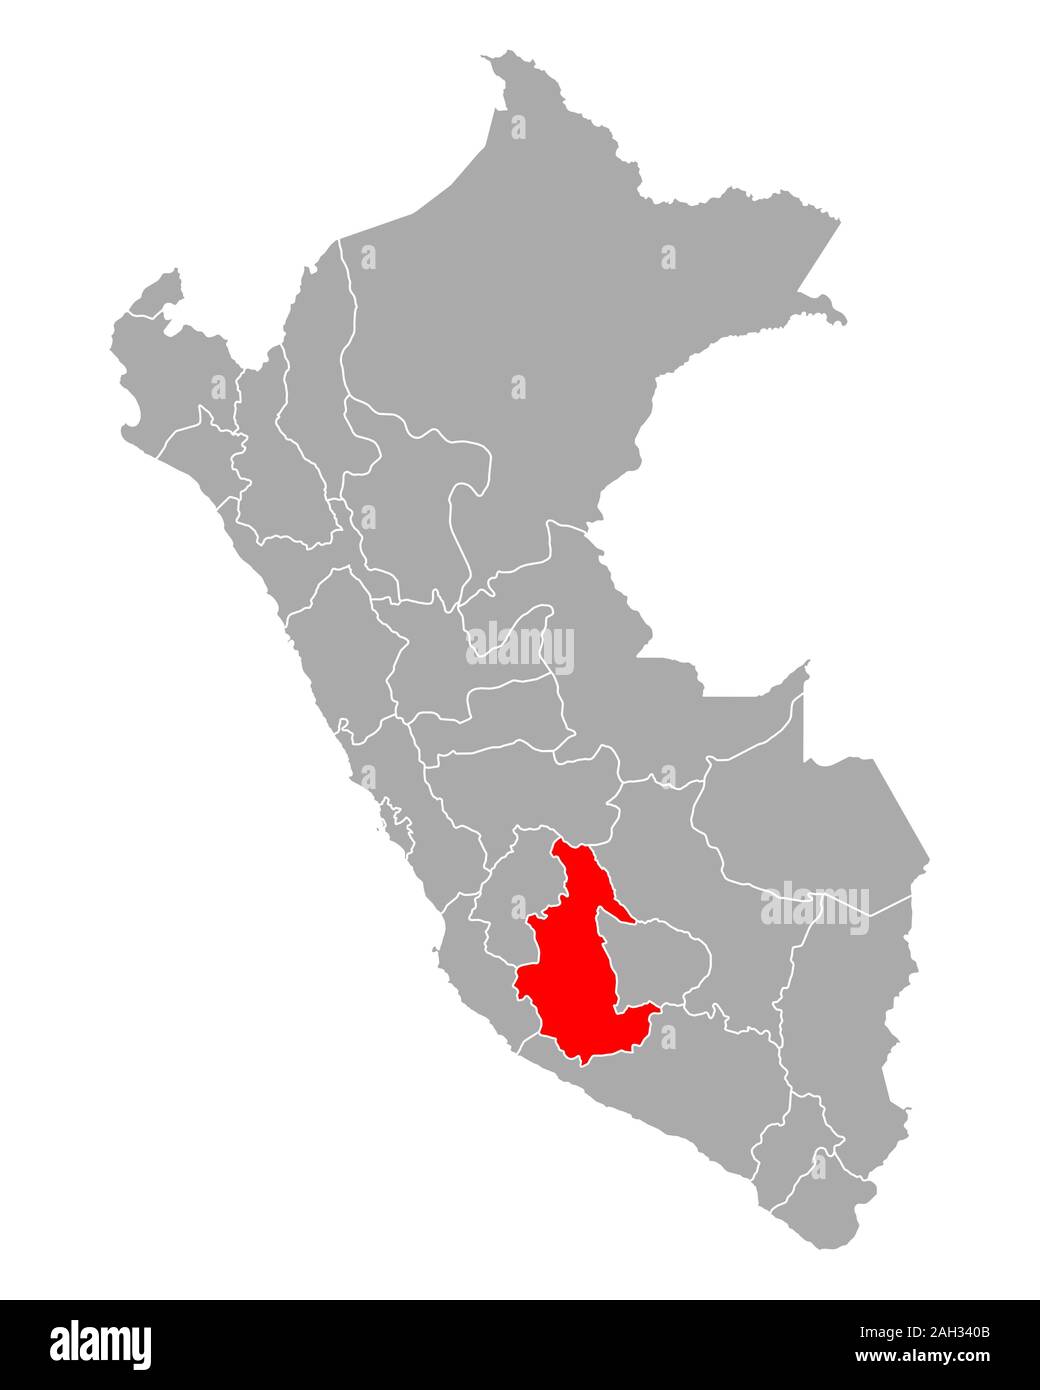 Mapa De Ayacucho En Peru 2ah340b 